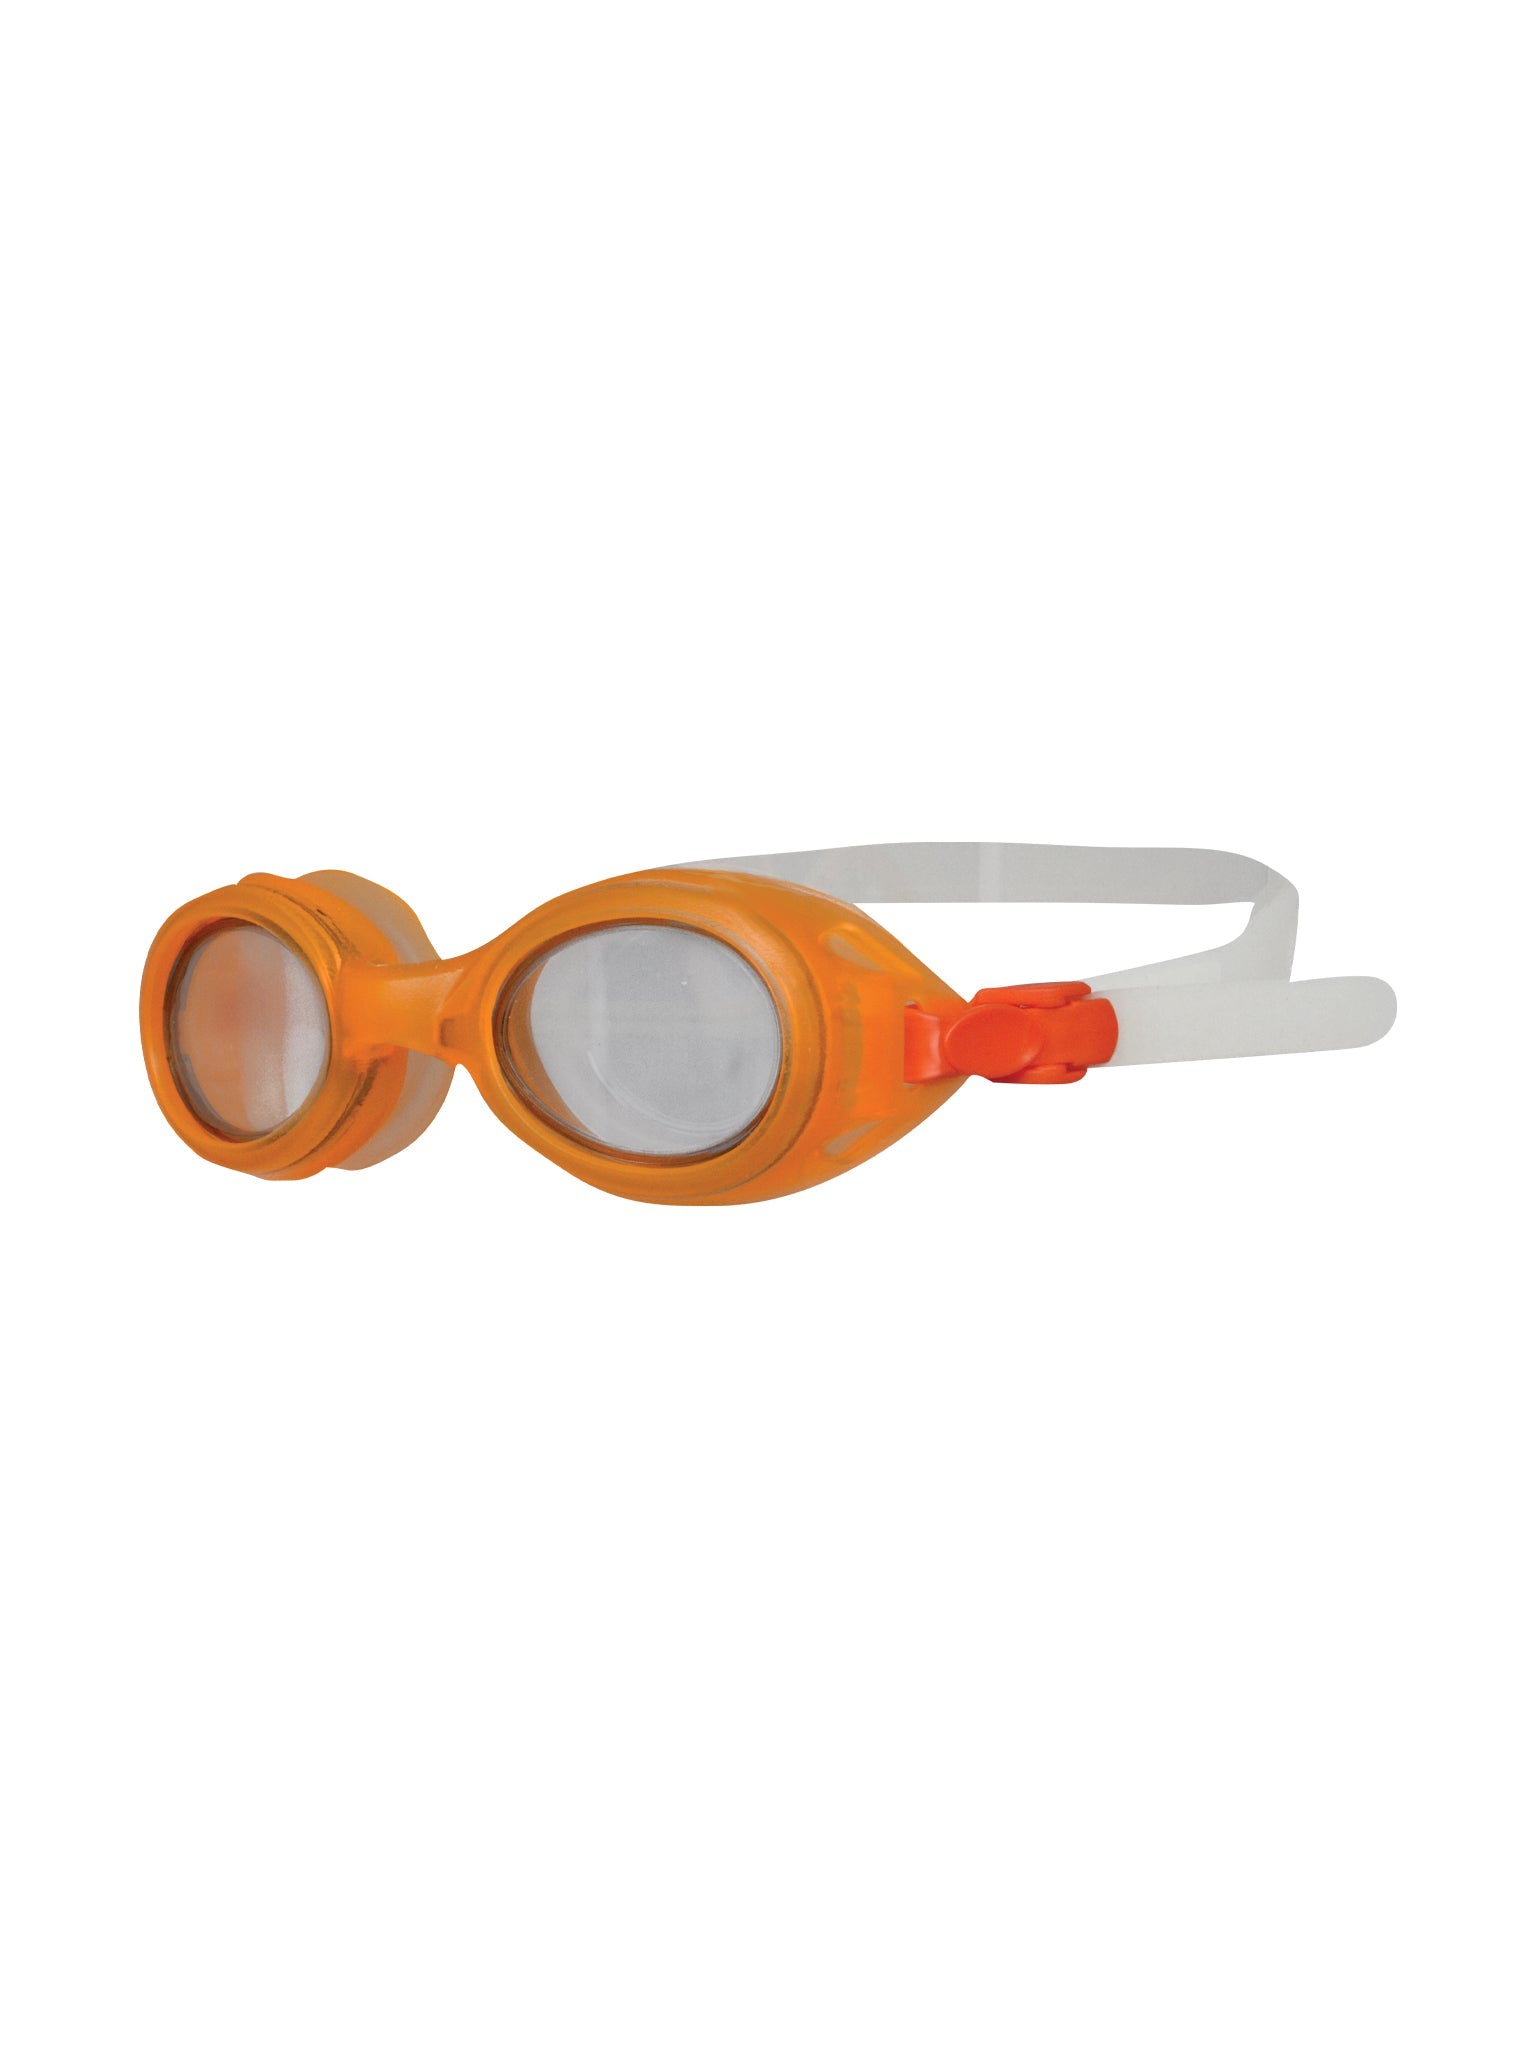 Lunettes de natation Hero Junior - Orange/Blanc